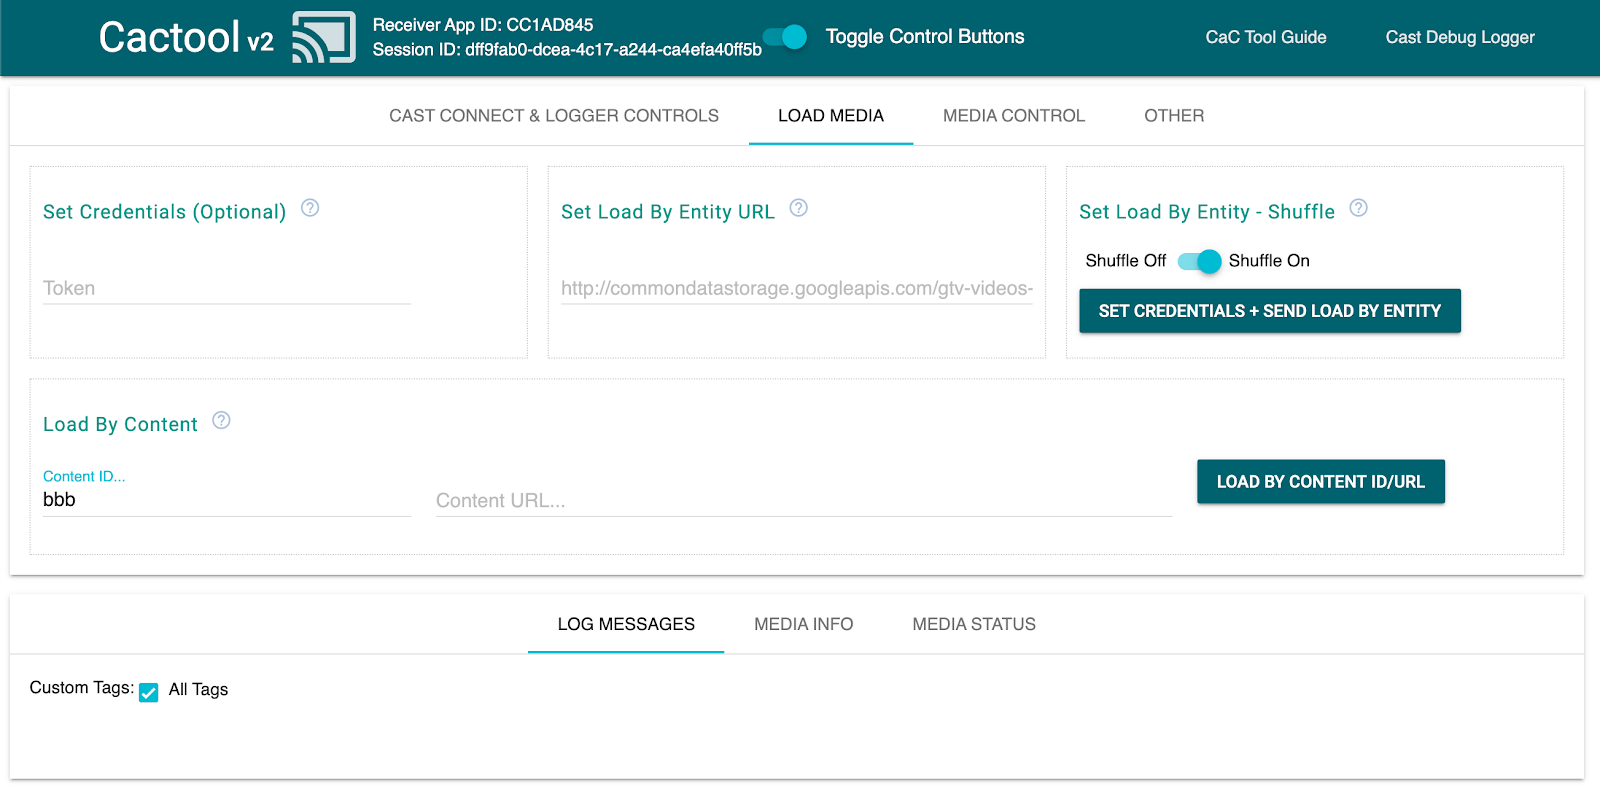 命令和控制 (CaC) 工具的“Load Media”标签页的图片